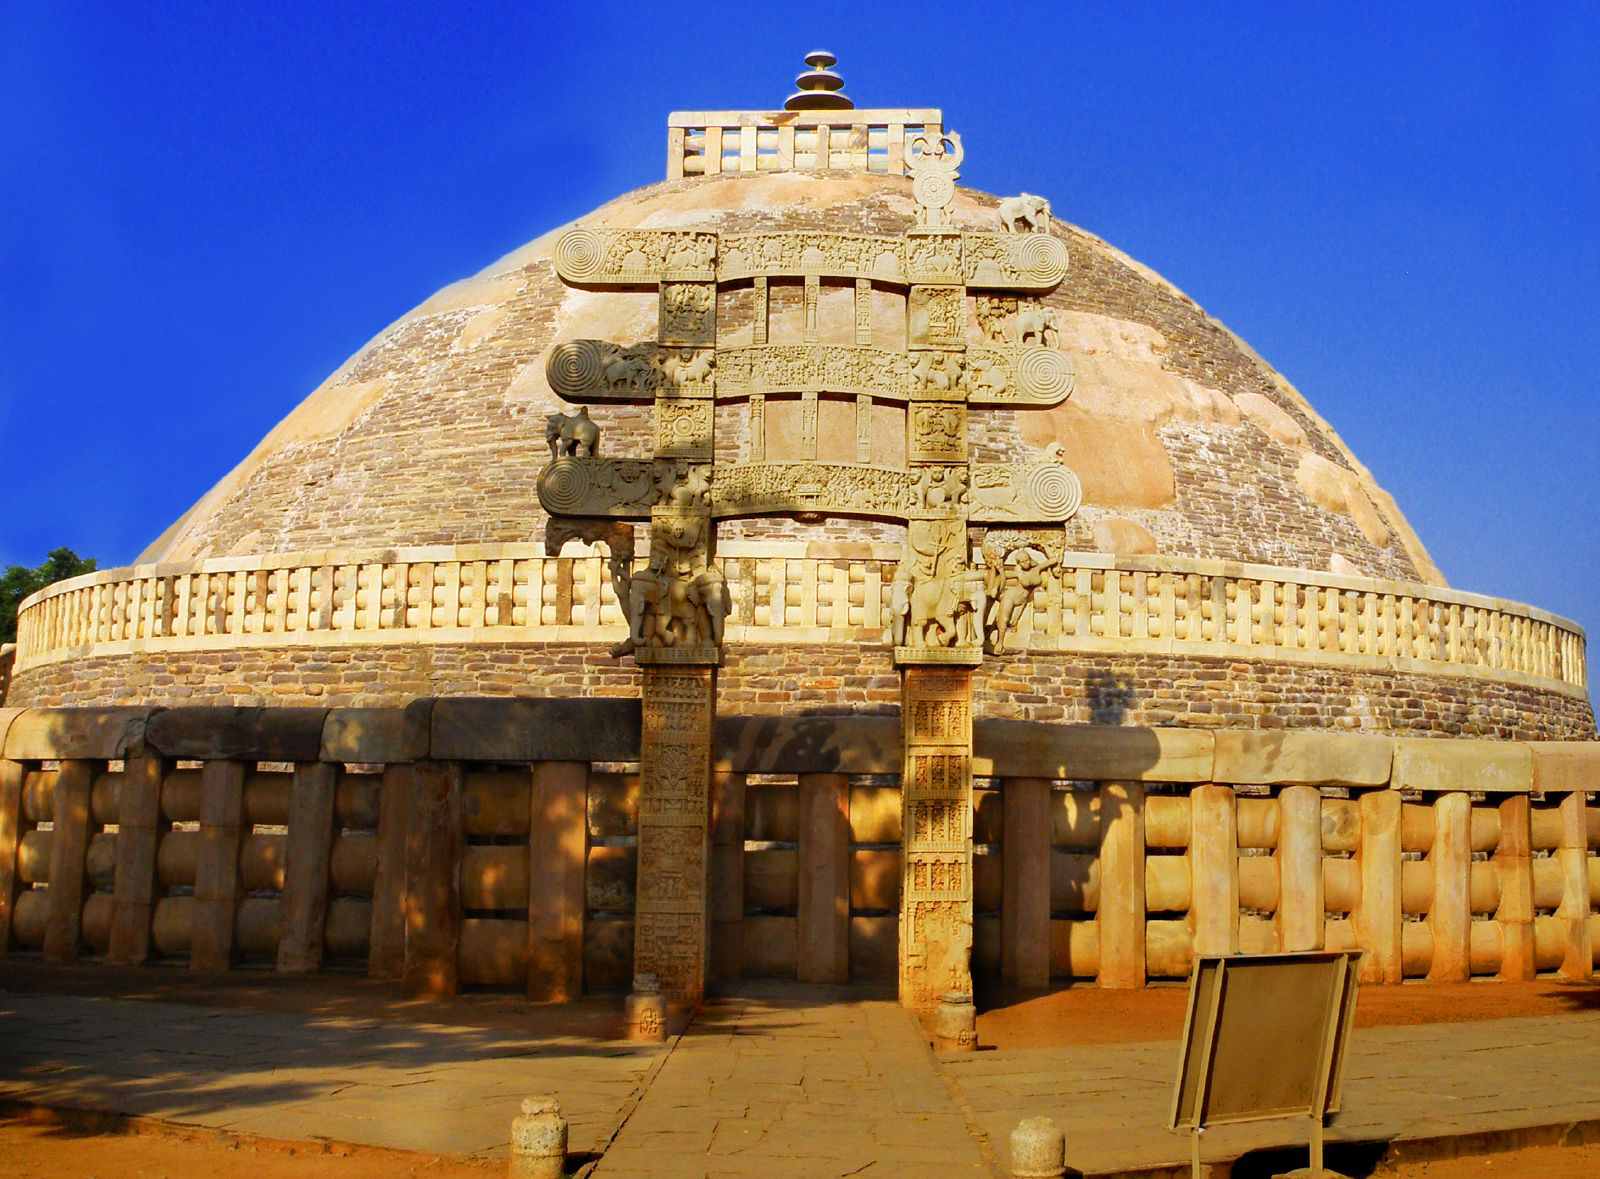 Great Stupa, Madhya Pradesh (Sanchi, India). Photo by Raveesh Vyas, CC BY-SA 2.0.